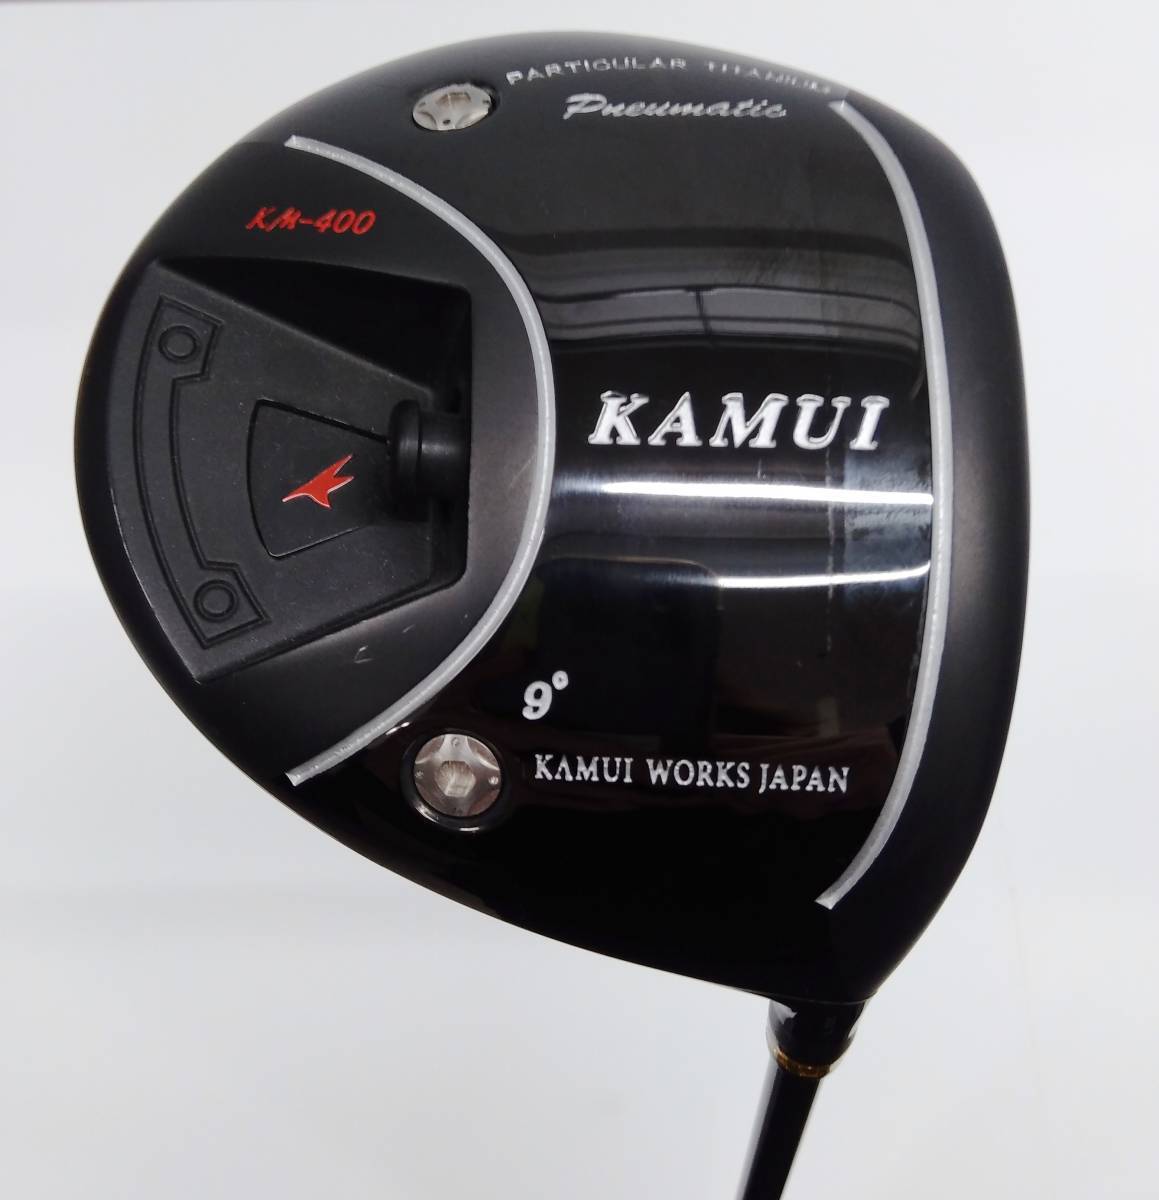 ☆【KAMUI】ドライバー カムイ KM-400 BLACK 低反発 9度 KAMUI Double Kick FLEX-S